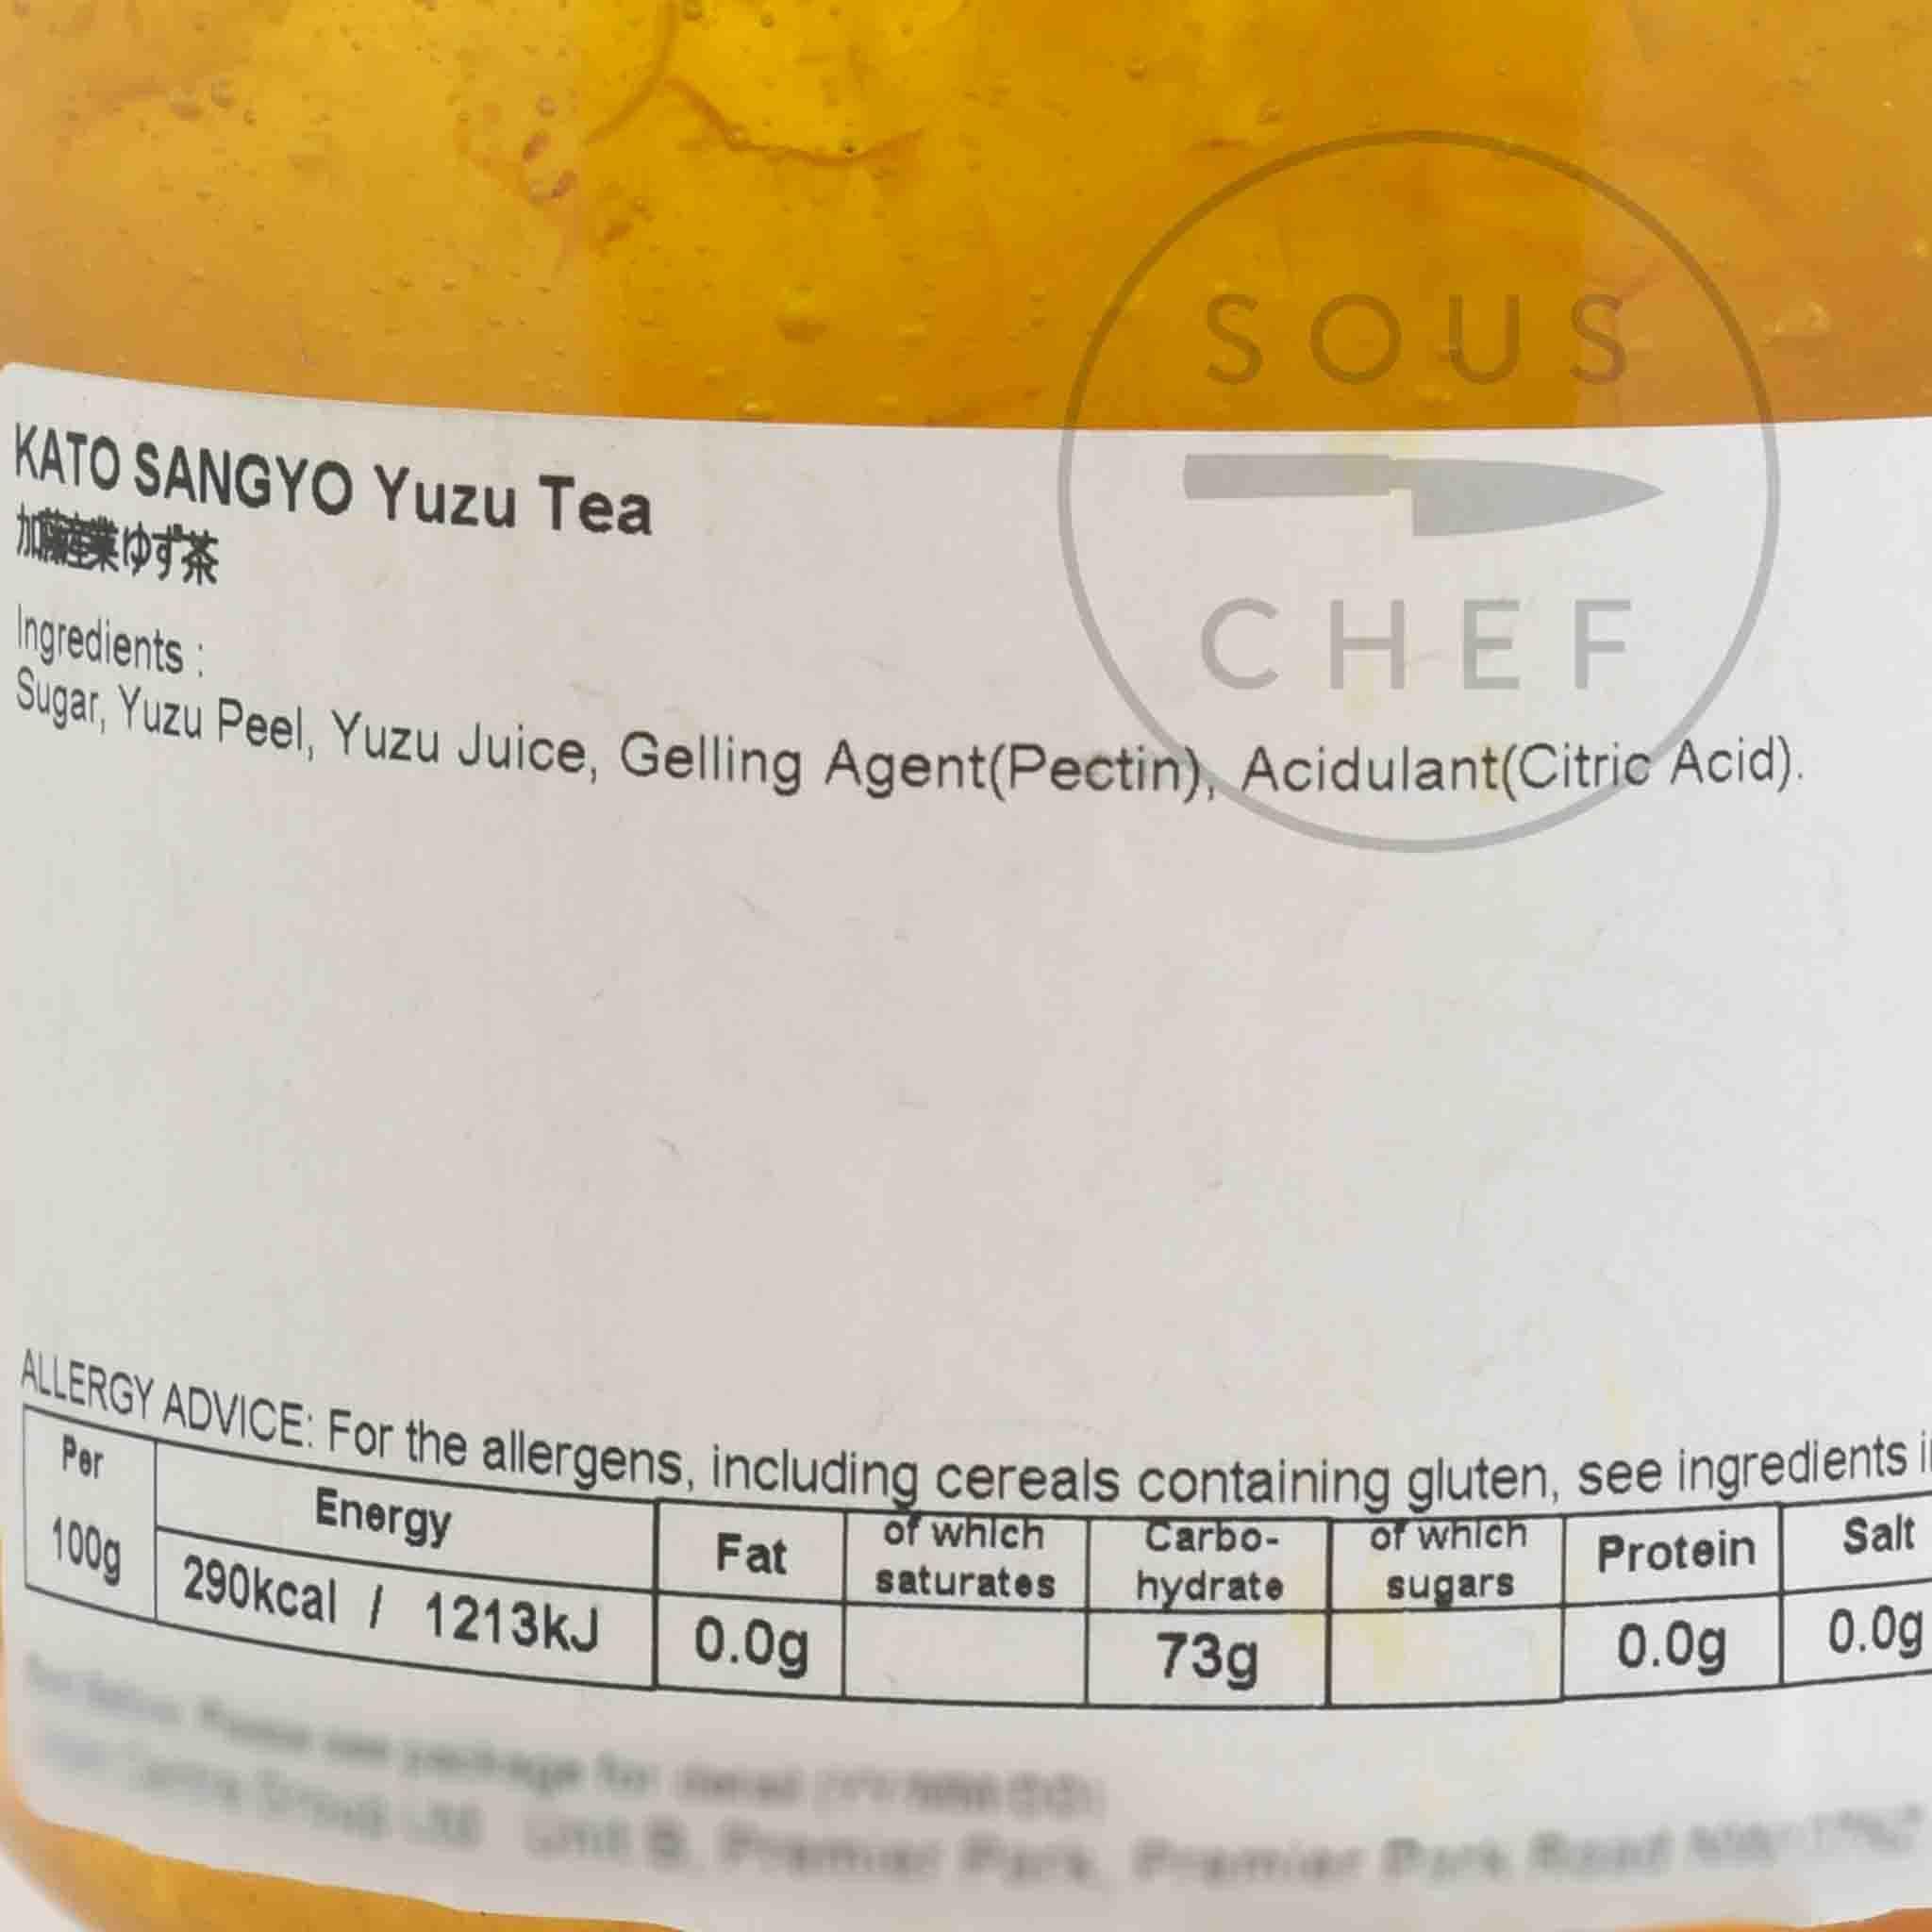 Kato Sangyo Yuzu Tea, 600g